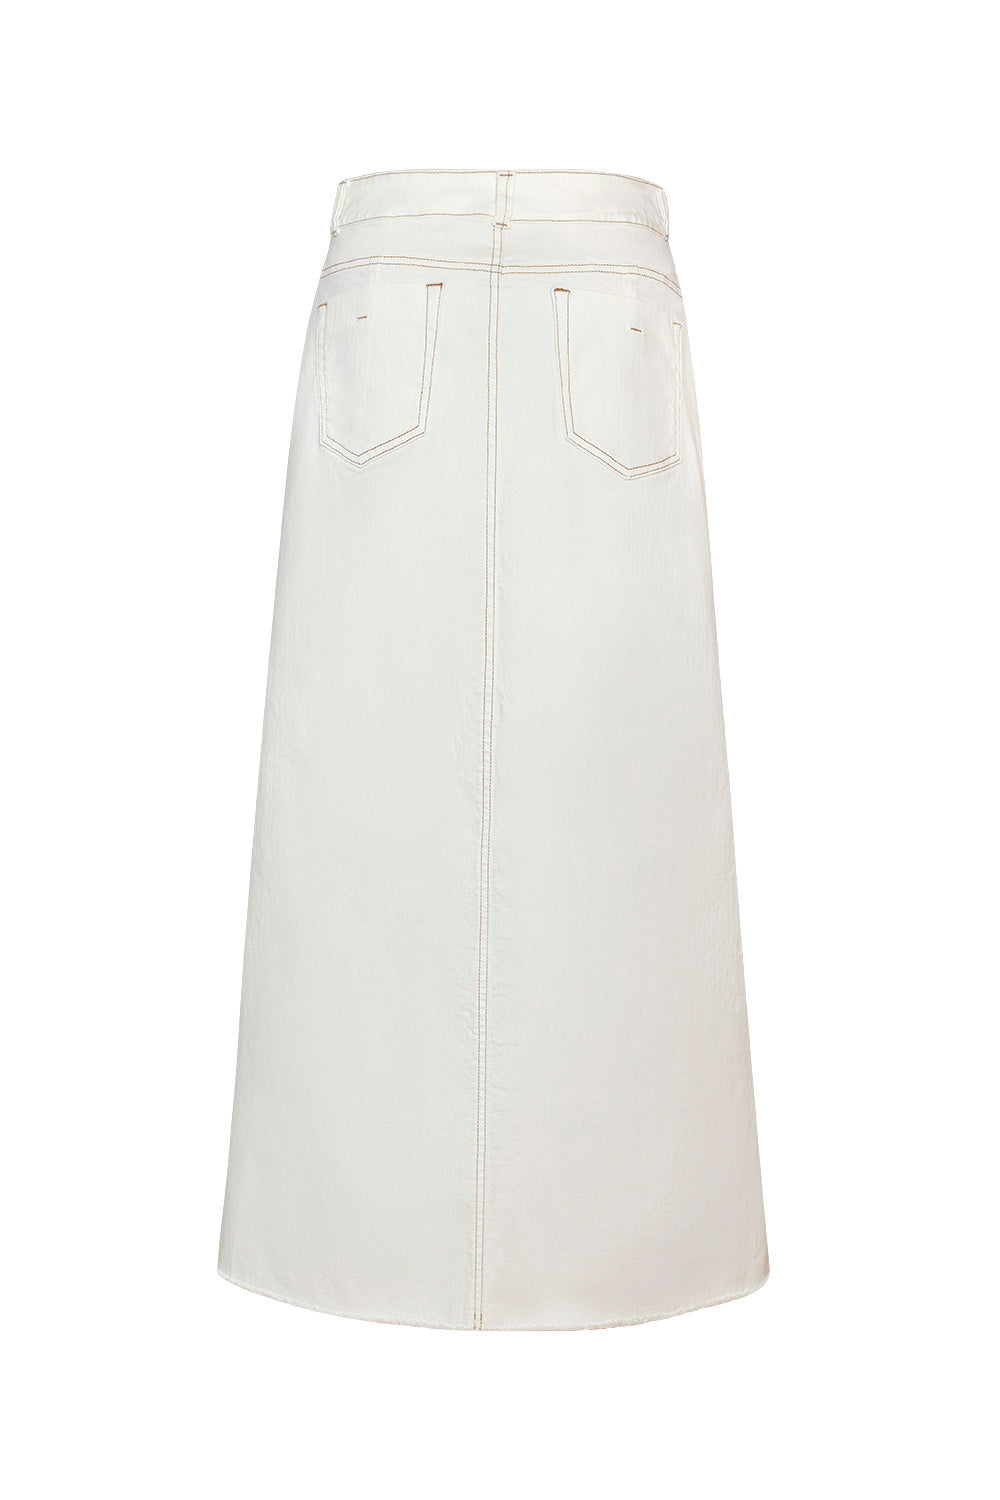 White Sand Skirt White